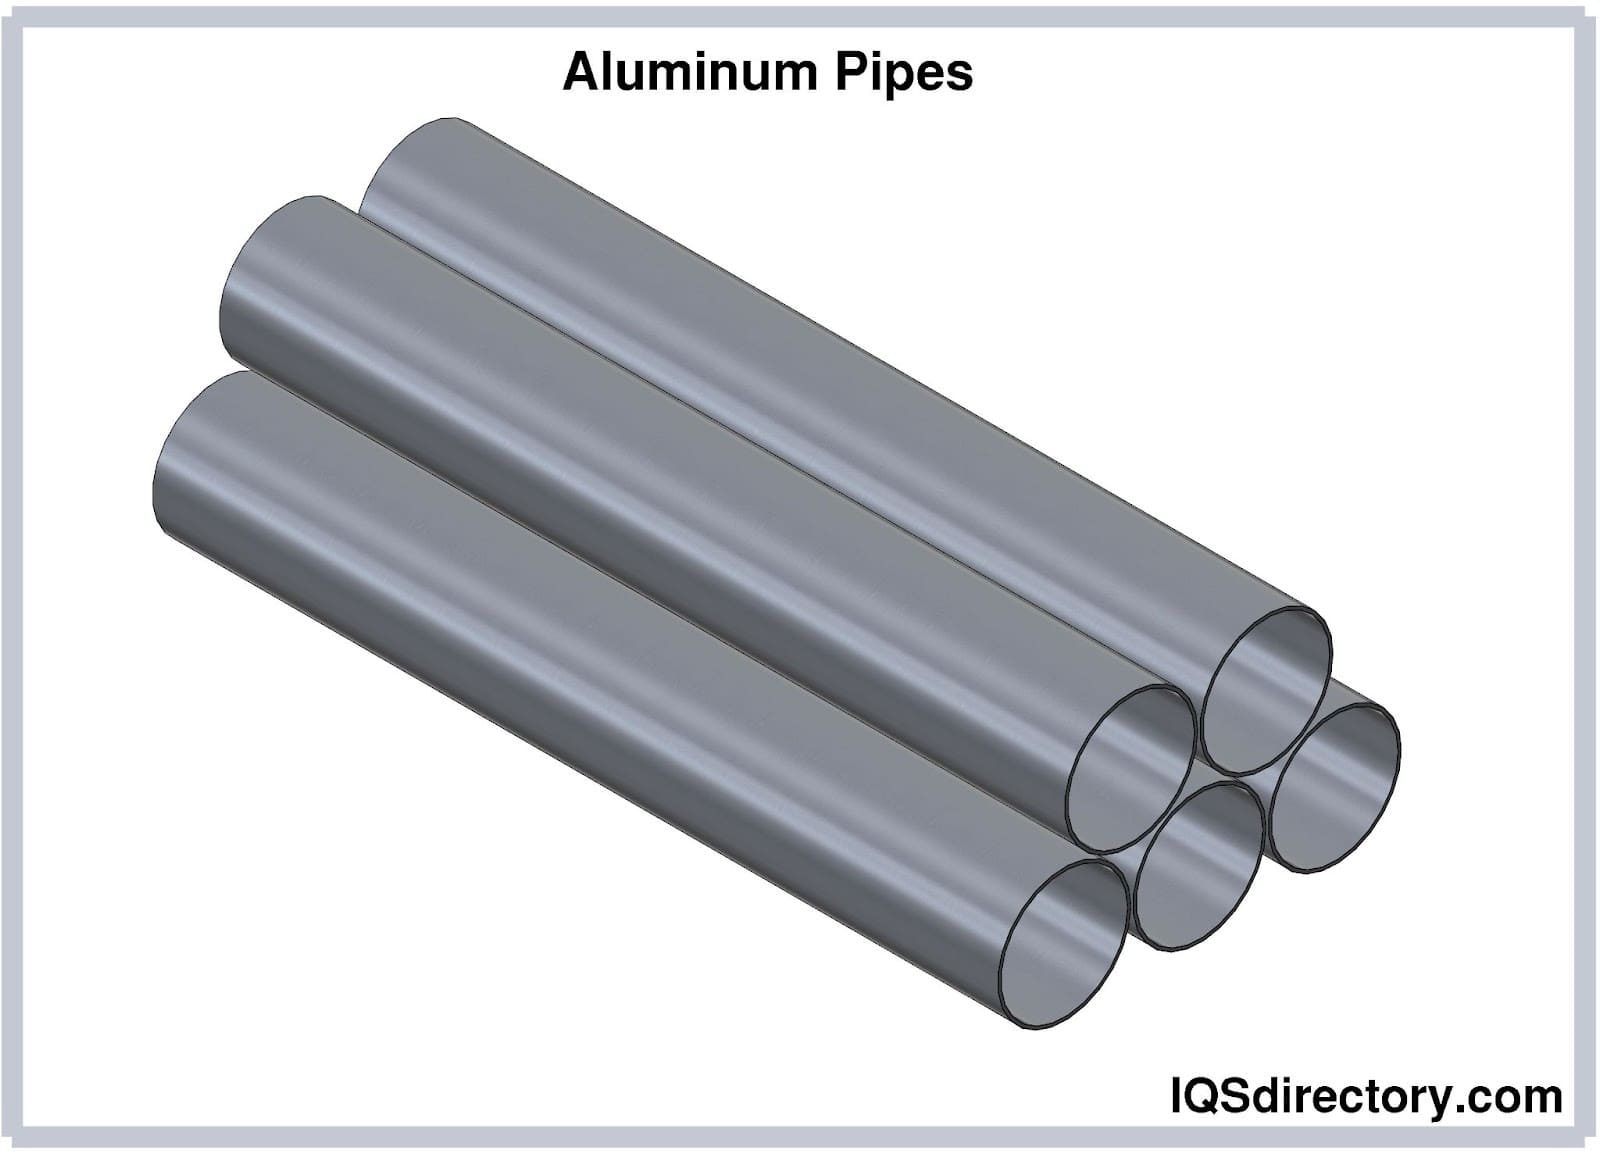 Aluminium Tube Guide - Sizes, Shapes & Uses